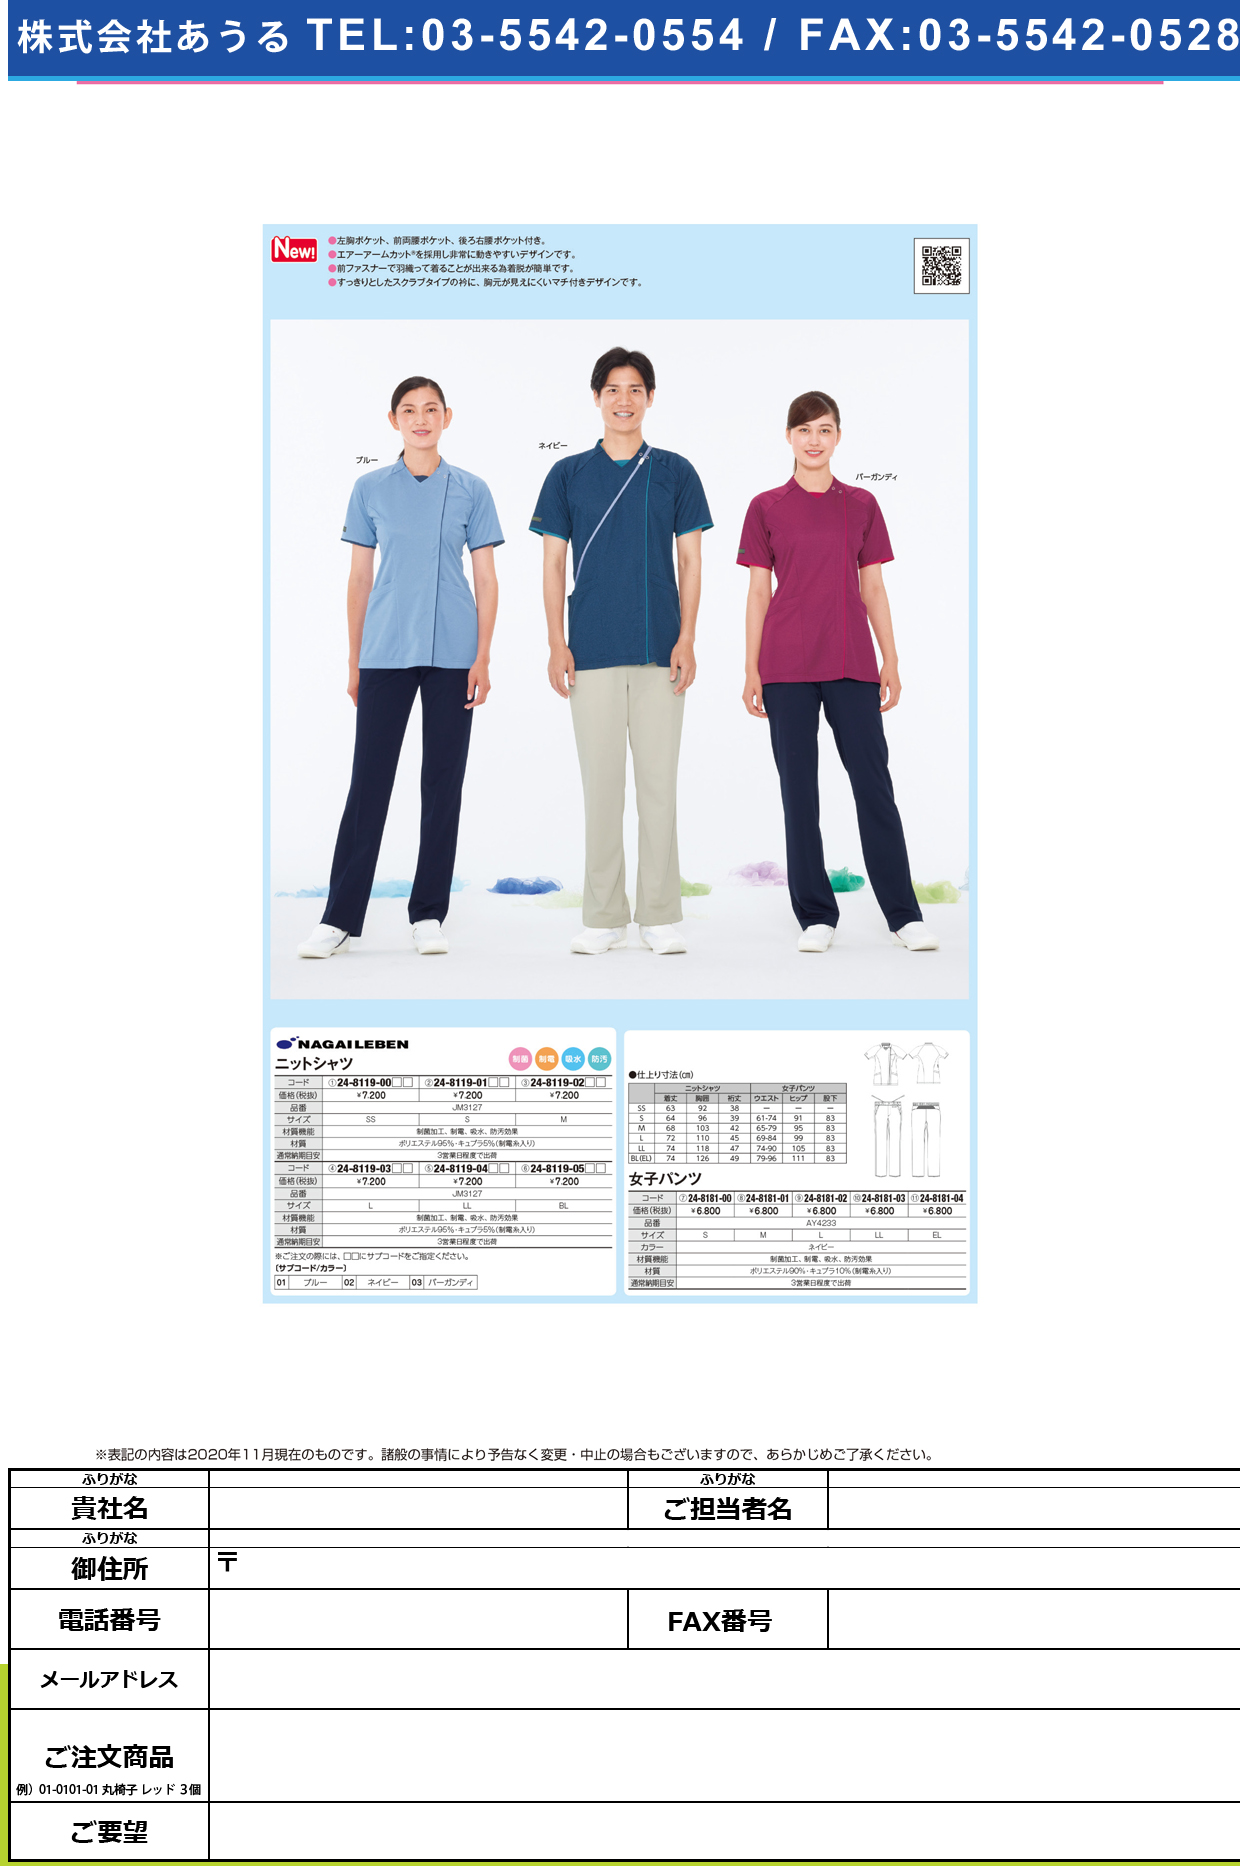 ニットシャツ JM-3127(LL)JM-3127(LL)ブルー(24-8119-04-01)【ナガイレーベン】(販売単位:1)